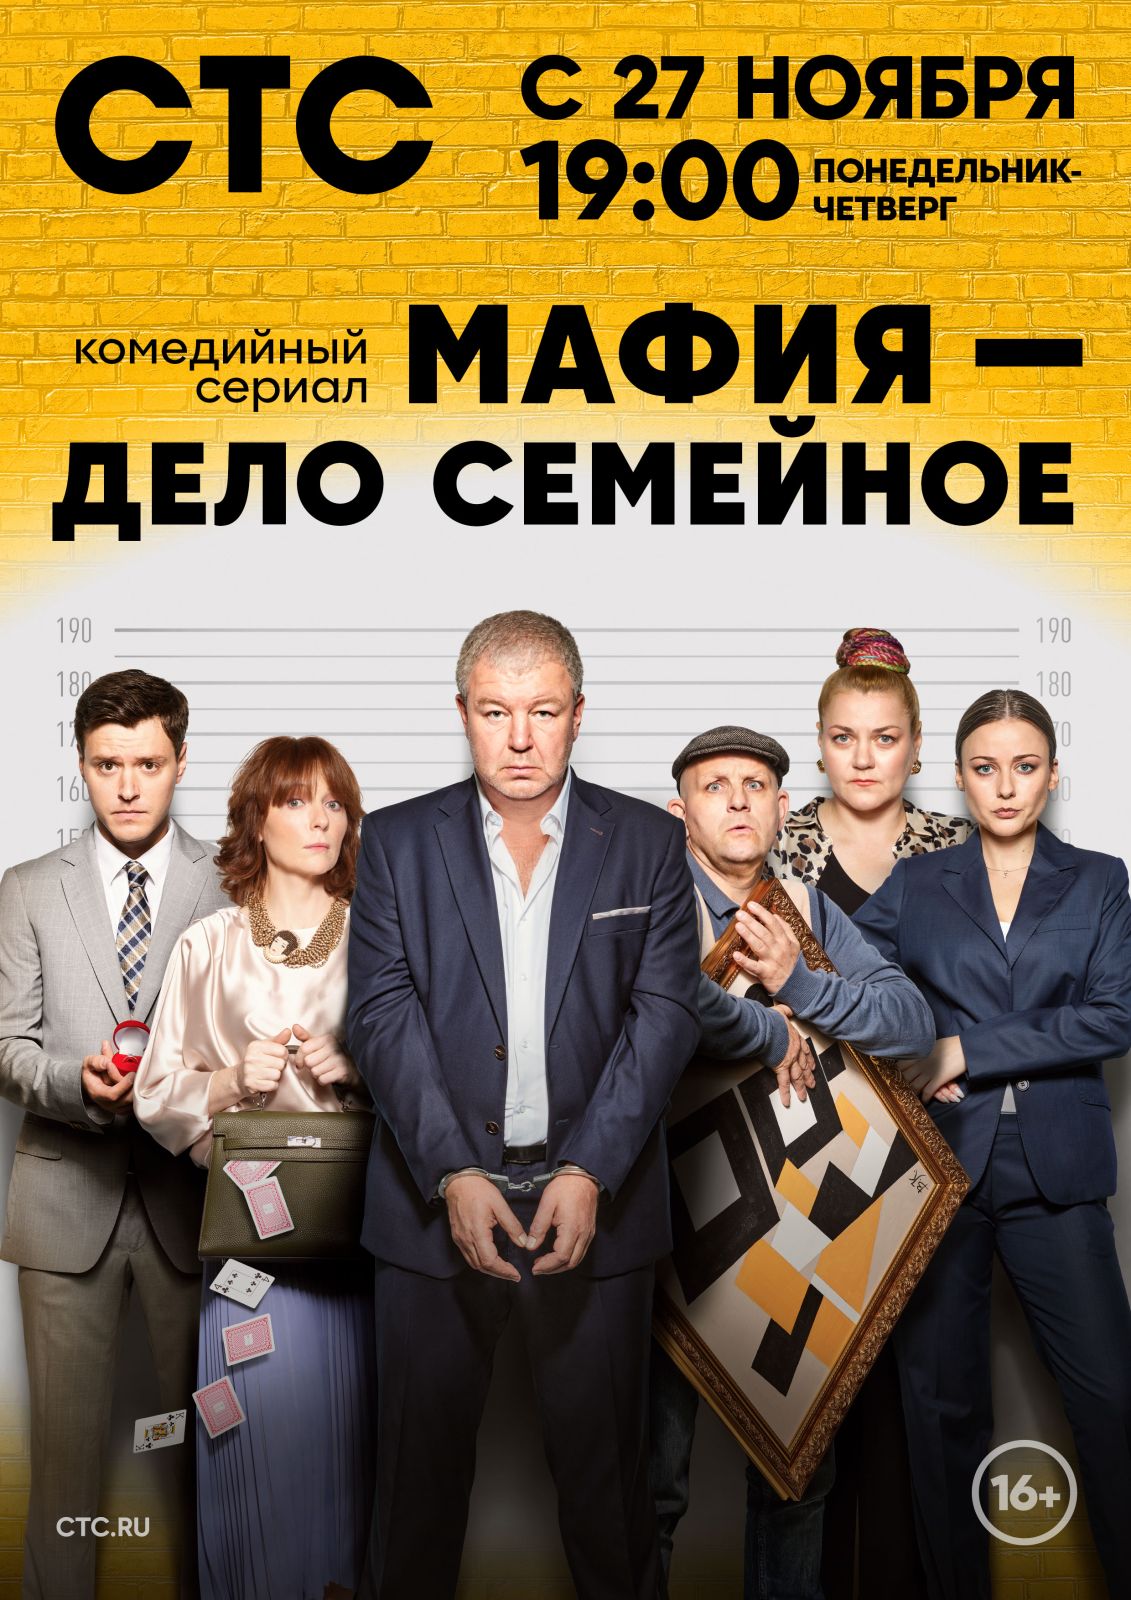 Премьера комедии «Мафия — дело семейное» с Александром Робаком и Ингрид Олеринской состоится 27 ноября